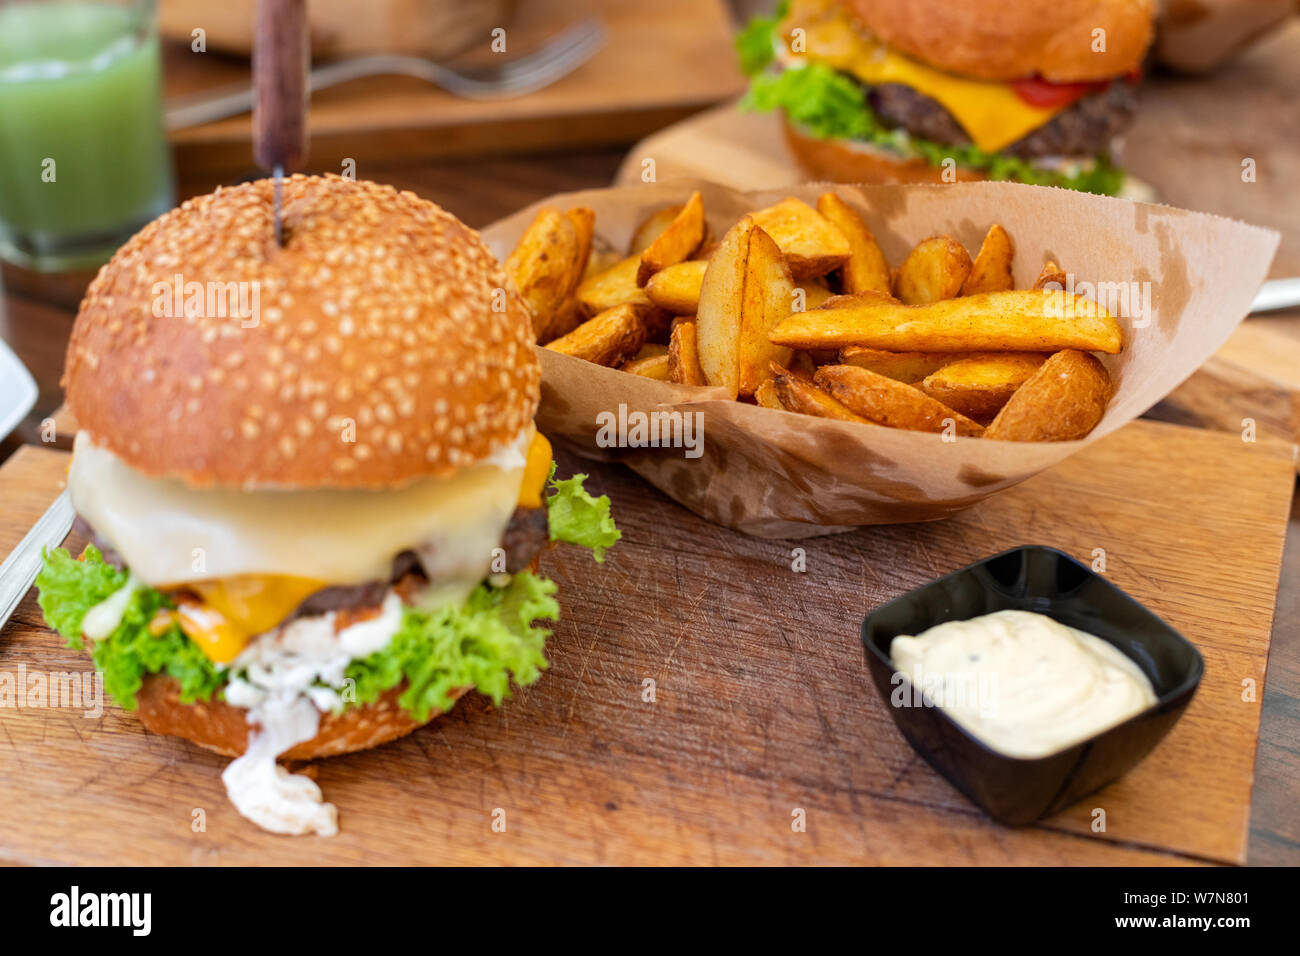 Bild von einem köstlichen saftigen Cheeseburger mit Keilen und Sauce Tartar auf hölzernen Platte serviert. Stockfoto